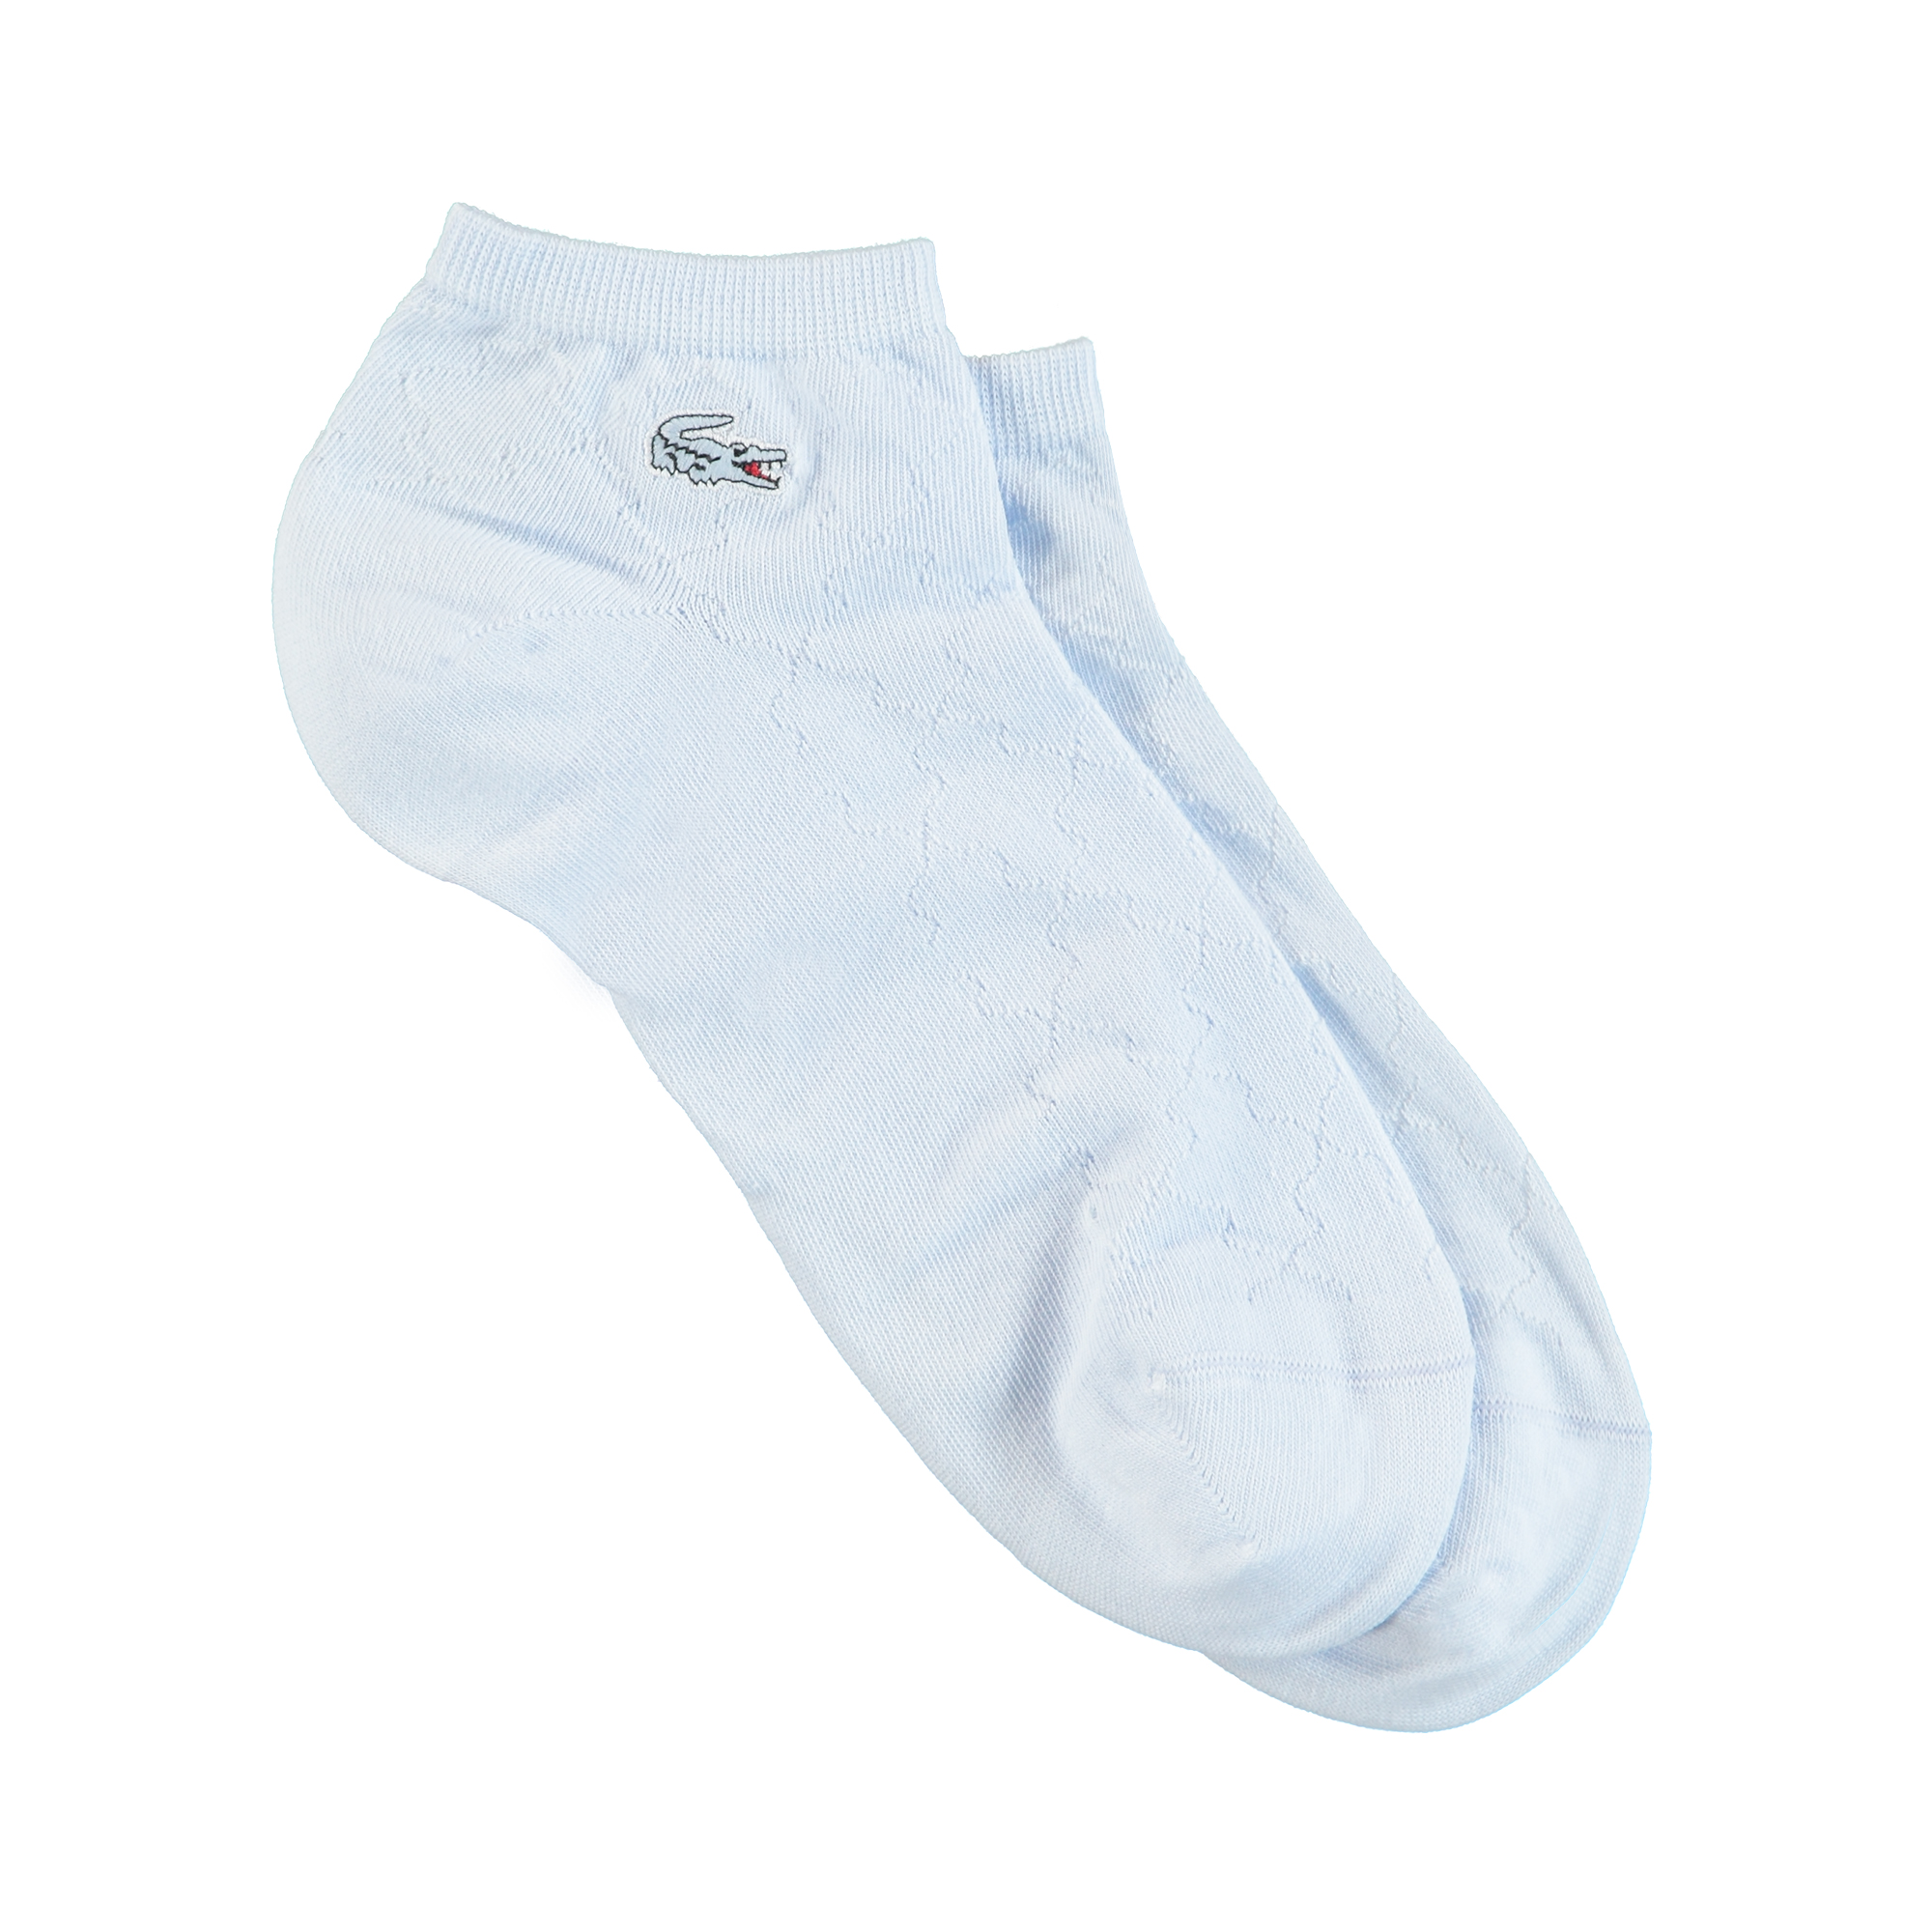 Lacoste Kadın Desenli Açık Mavi Çorap. 1